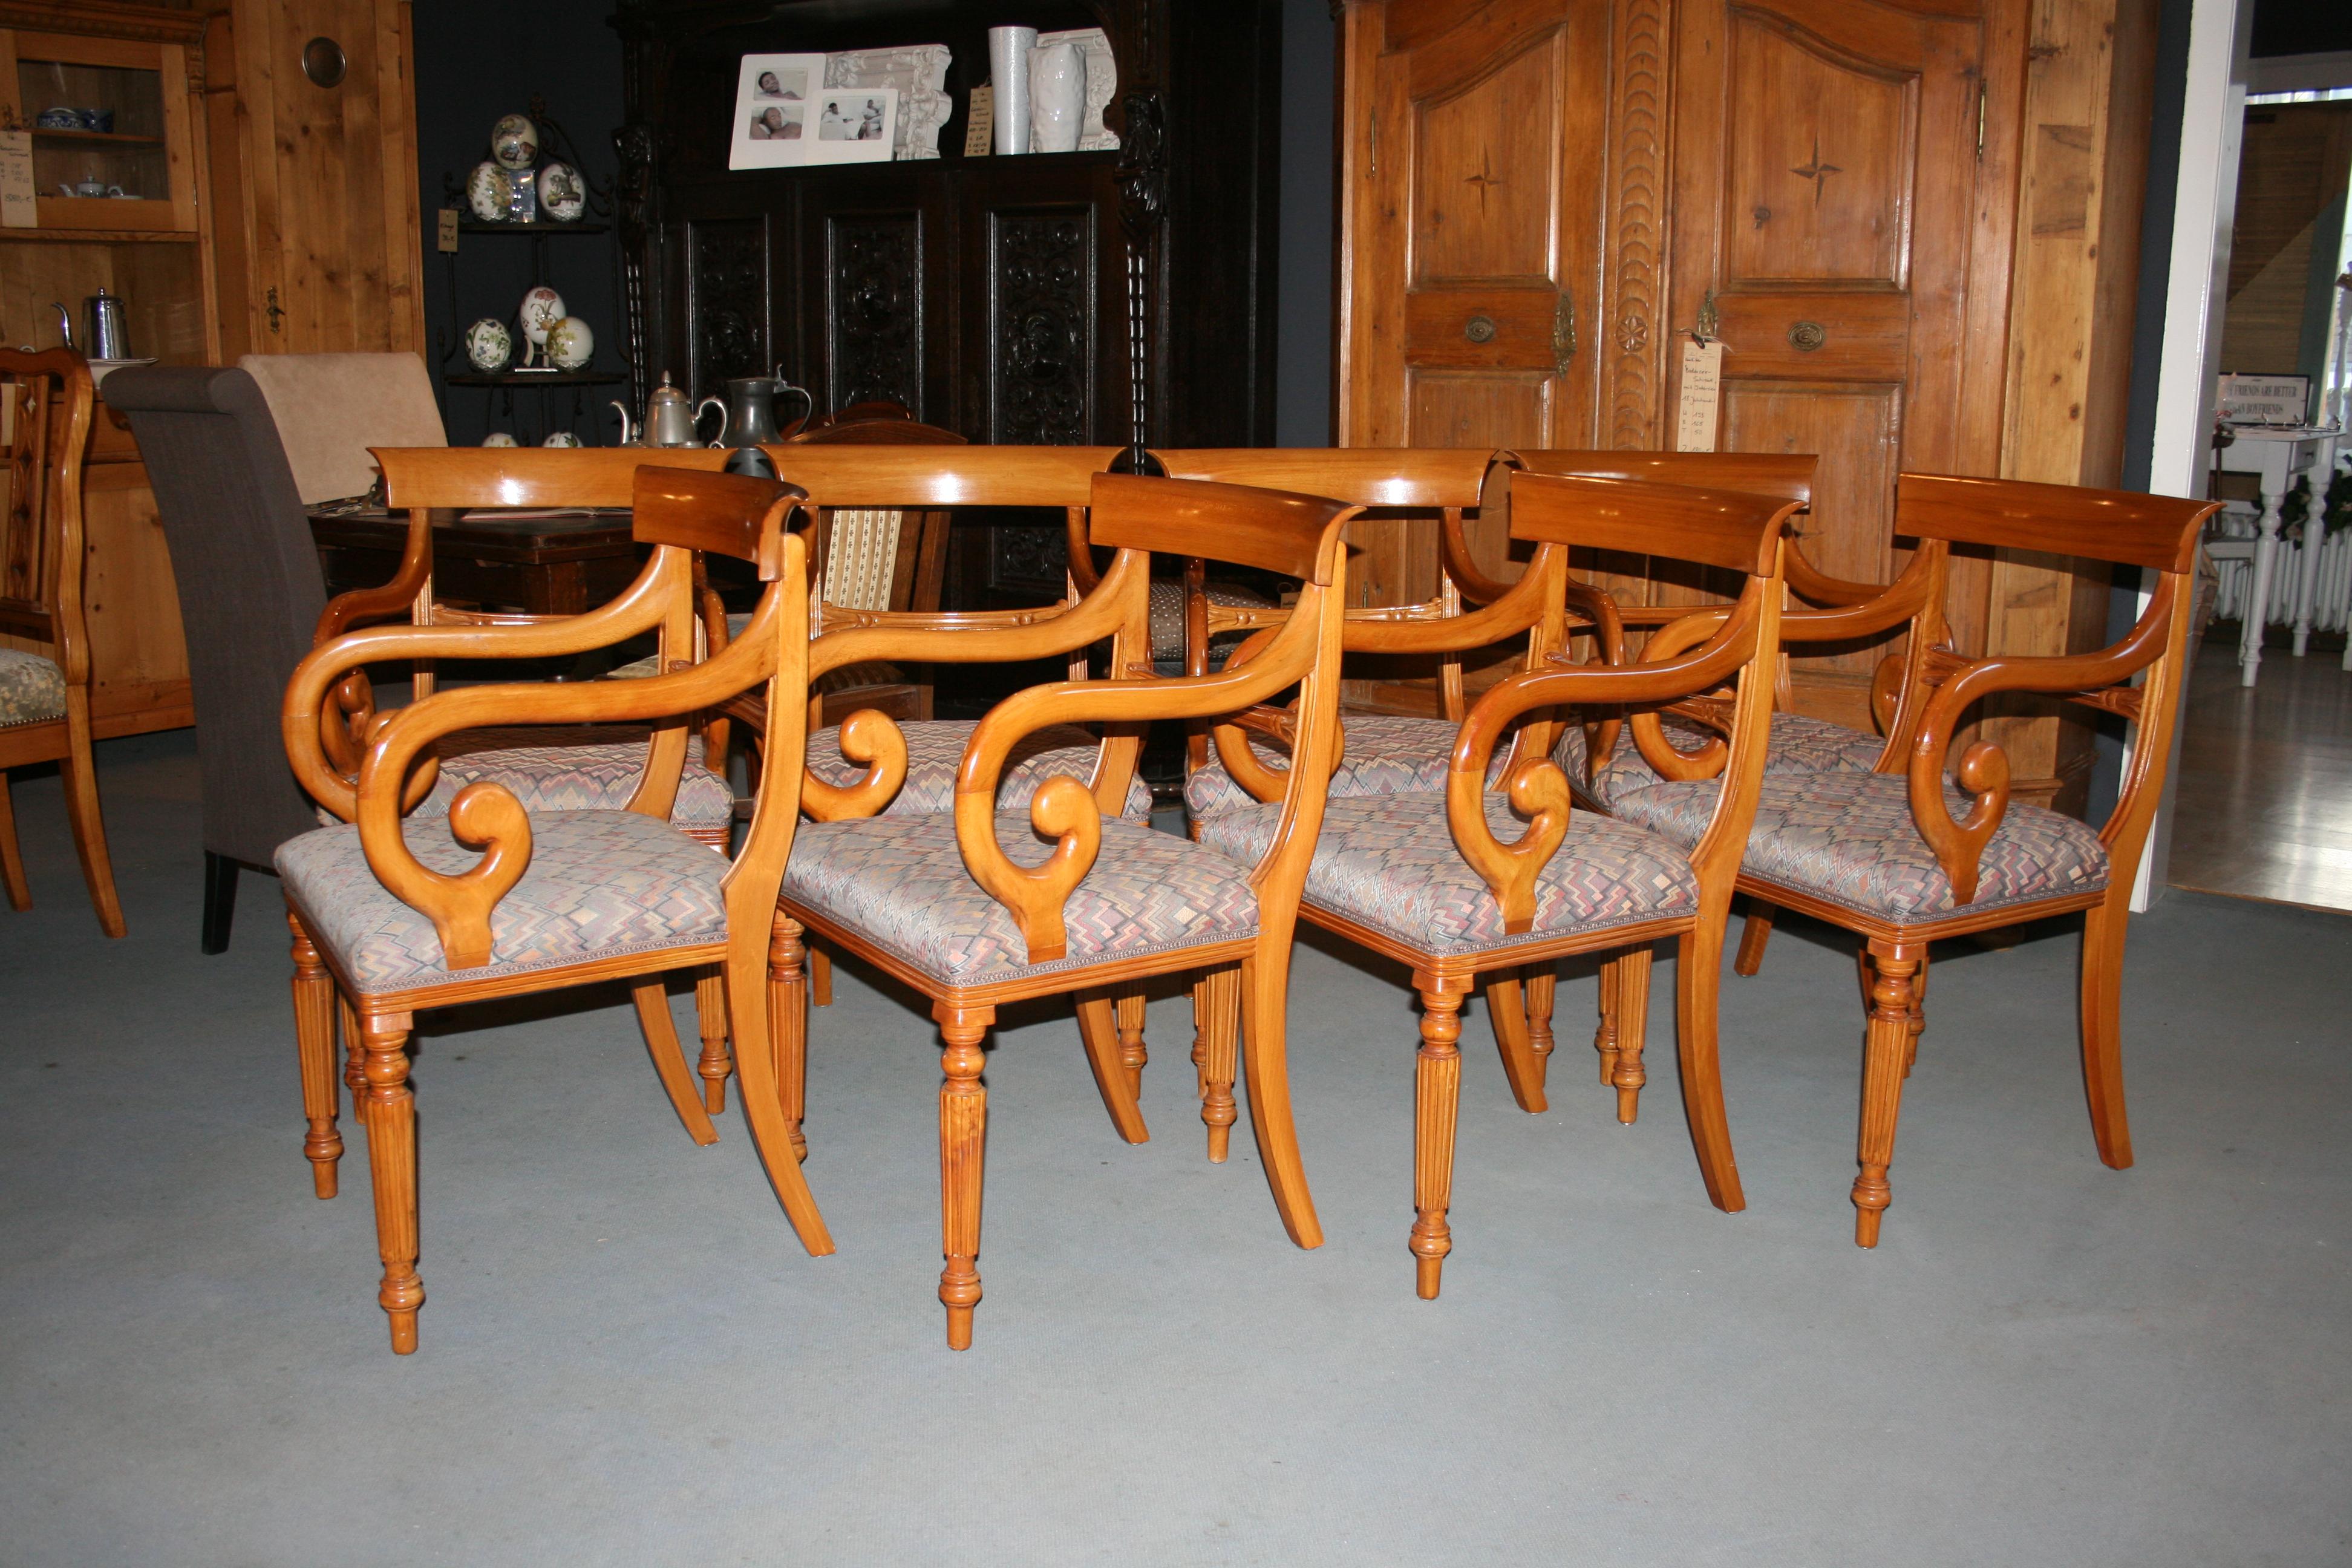 Schöne Sesselgruppe bestehend aus 8 so genannten Säbelsesseln aus Bugholz (kirschbaumfarben gebeizt) im Biedermeier-Stil. 

Abmessungen: 89 cm hoch, 55 cm breit, 51 cm tief; Sitzhöhe 48 cm